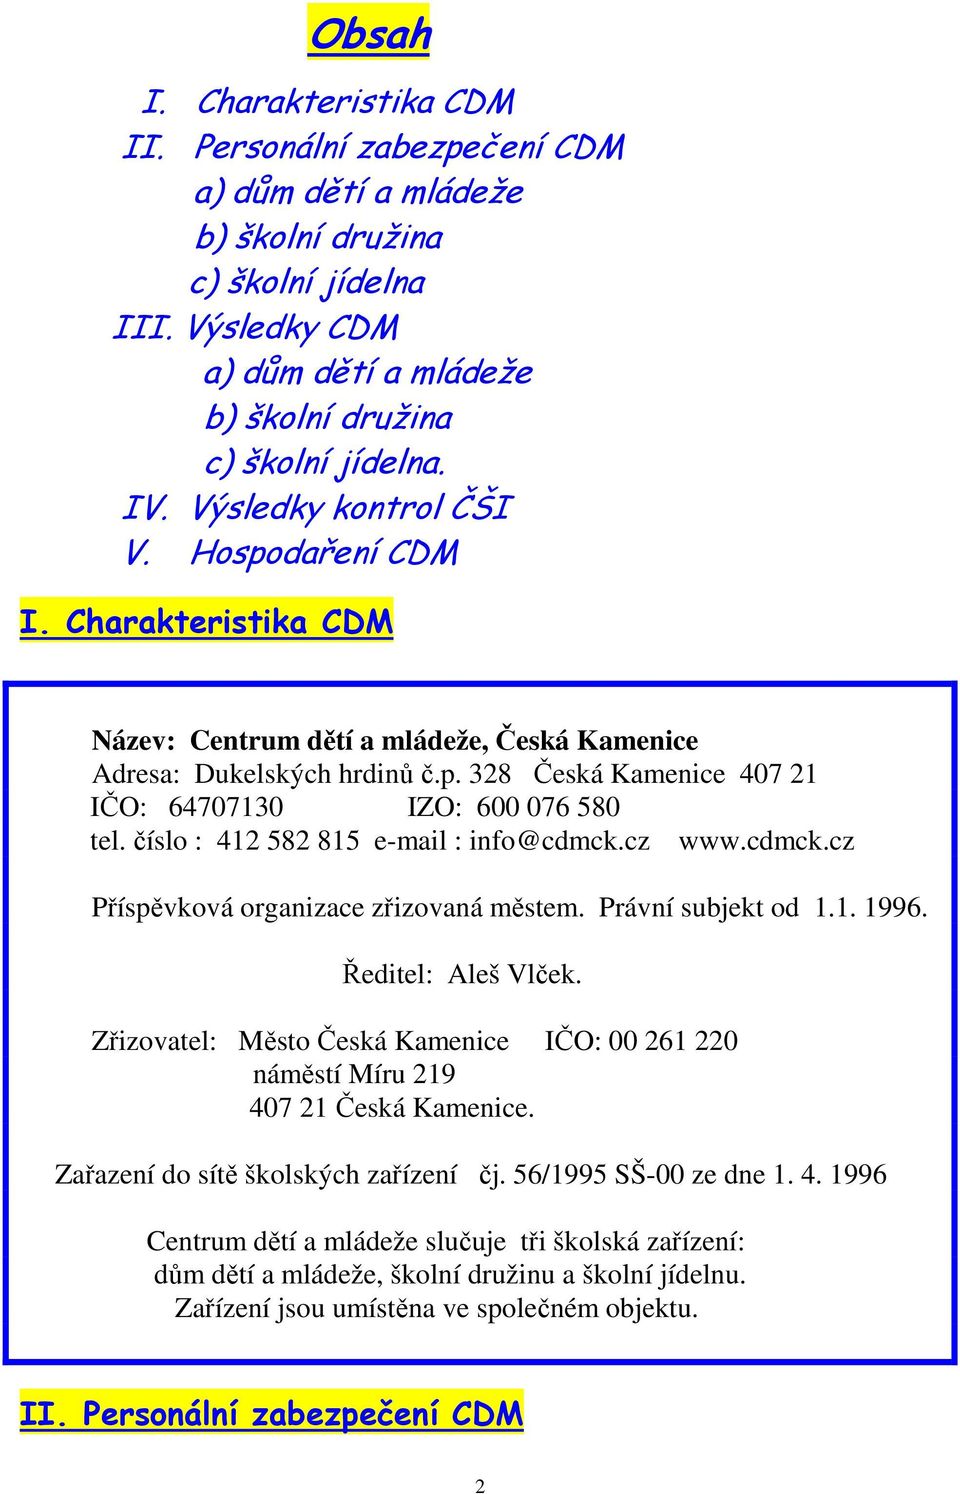 číslo : 412 582 815 e-mail : info@cdmck.cz www.cdmck.cz Příspěvková organizace zřizovaná městem. Právní subjekt od 1.1. 1996. Ředitel: Aleš Vlček.